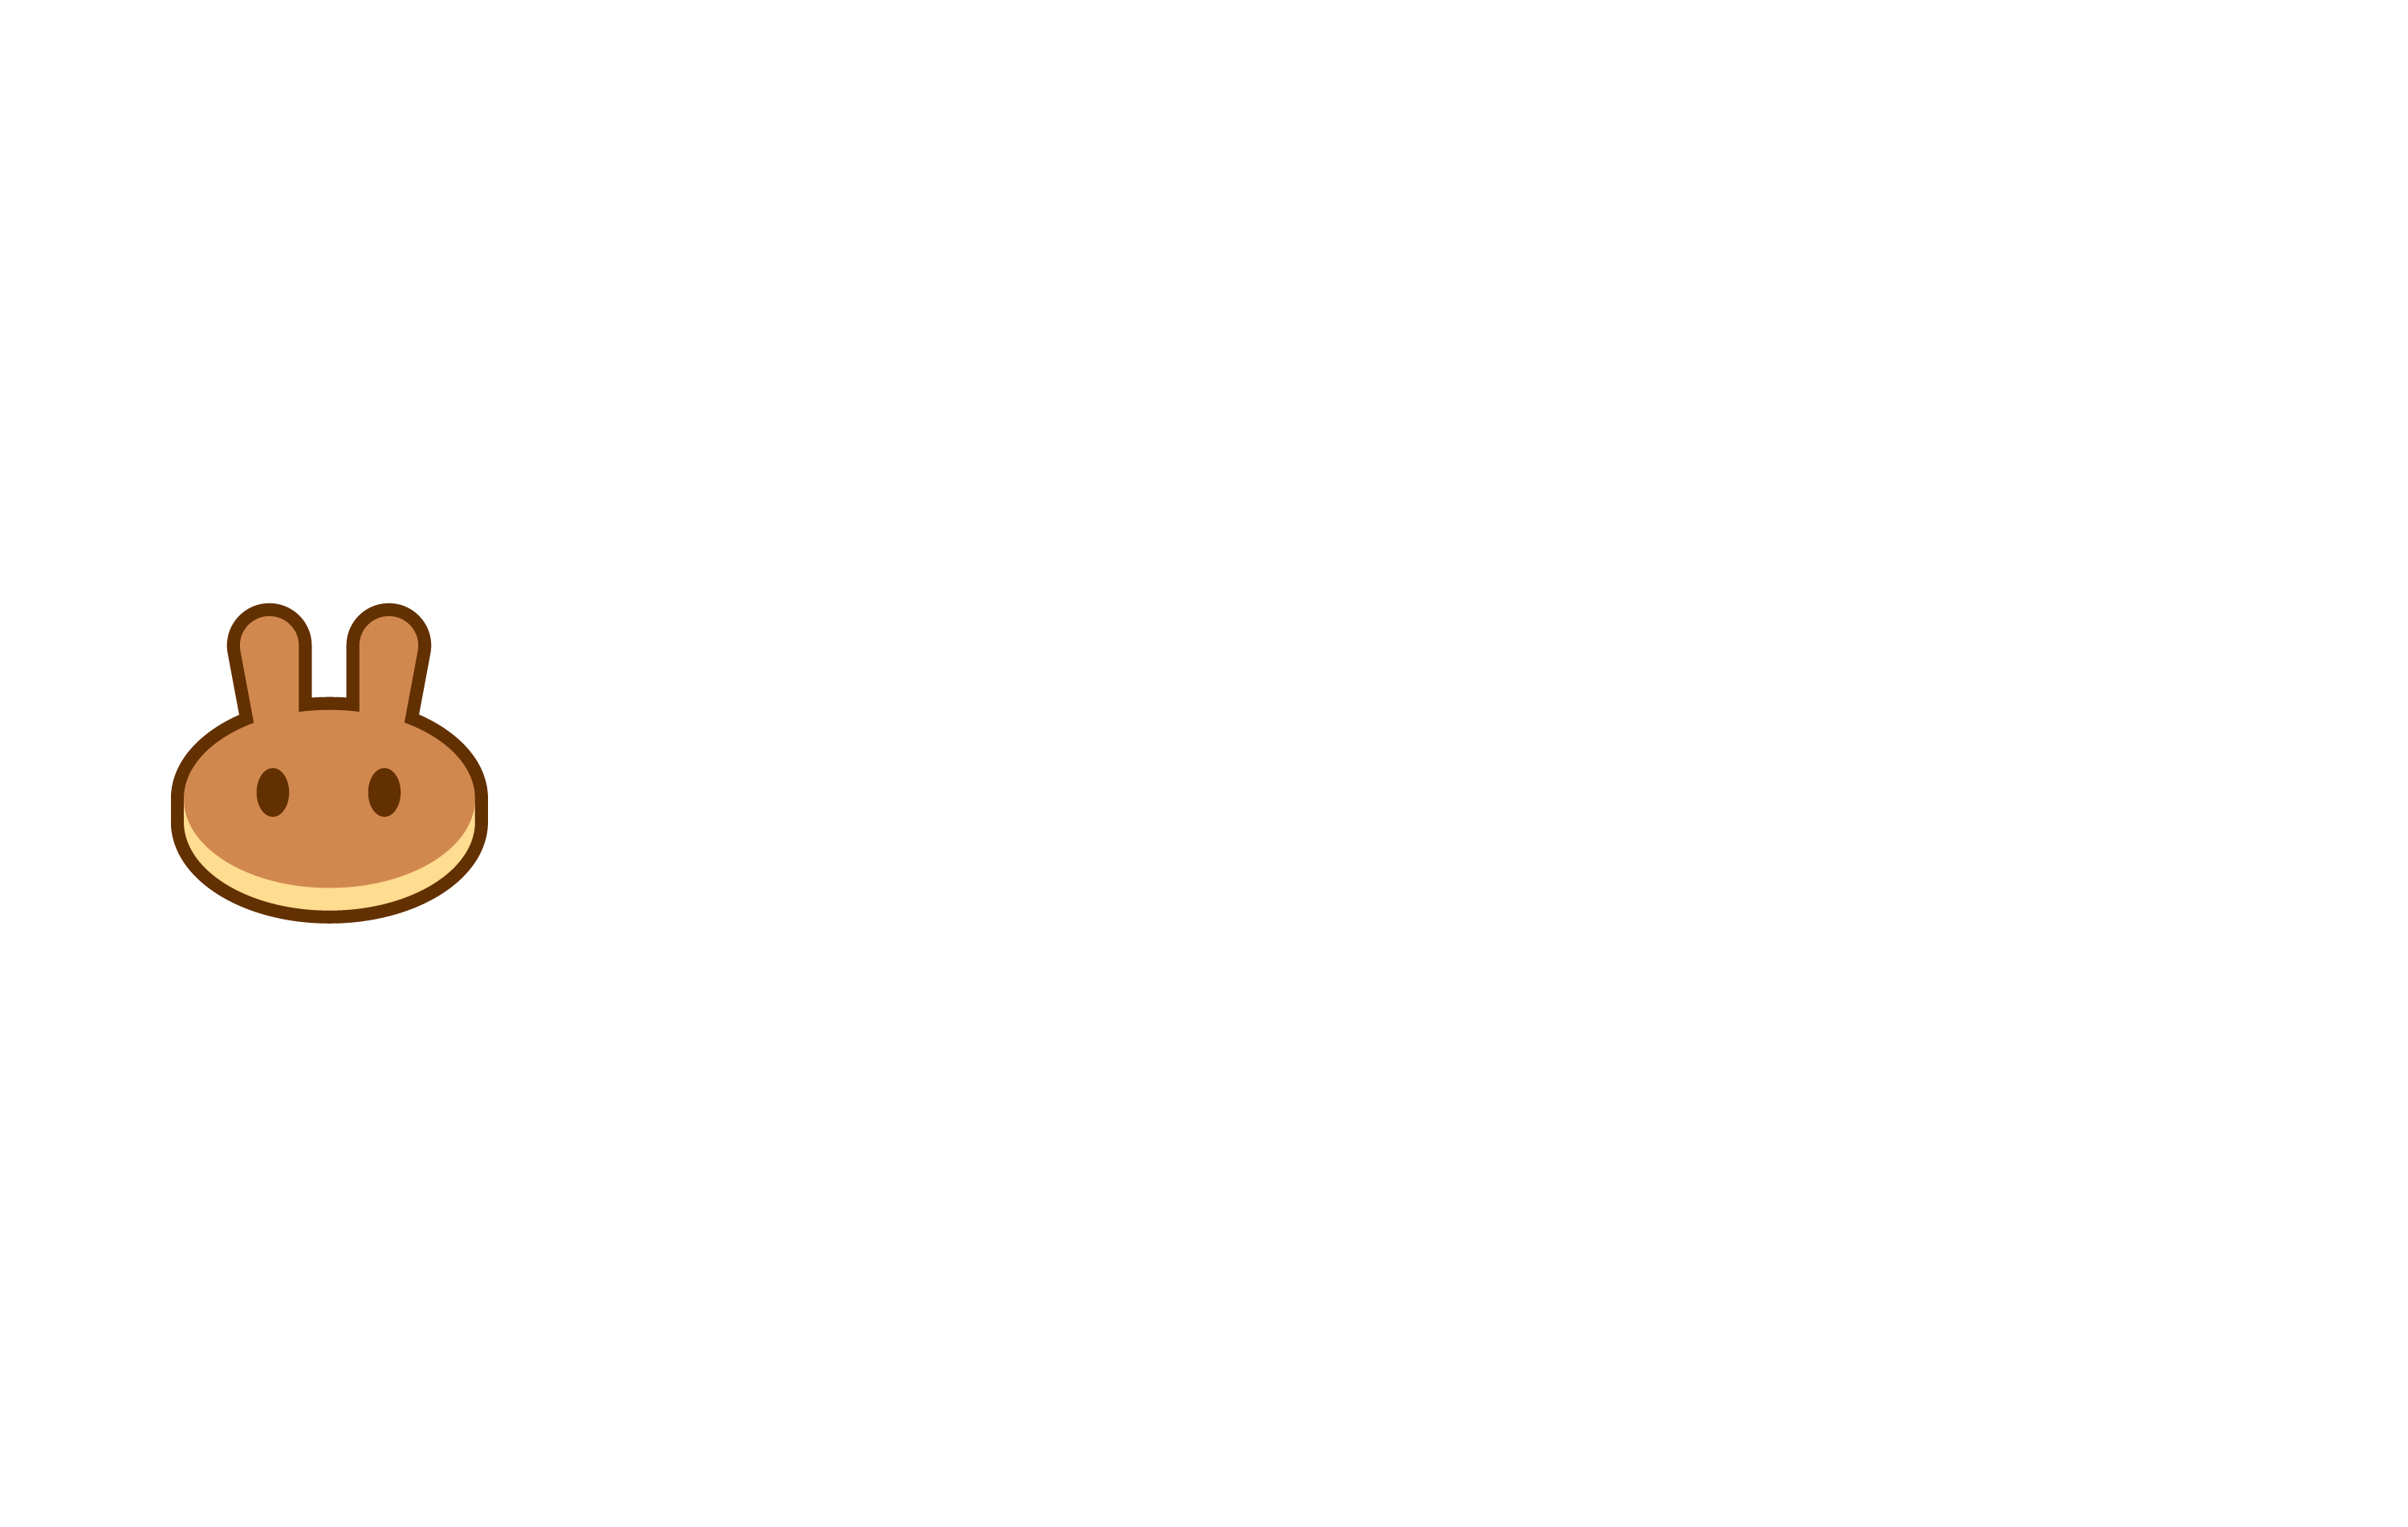 Pancakeswap